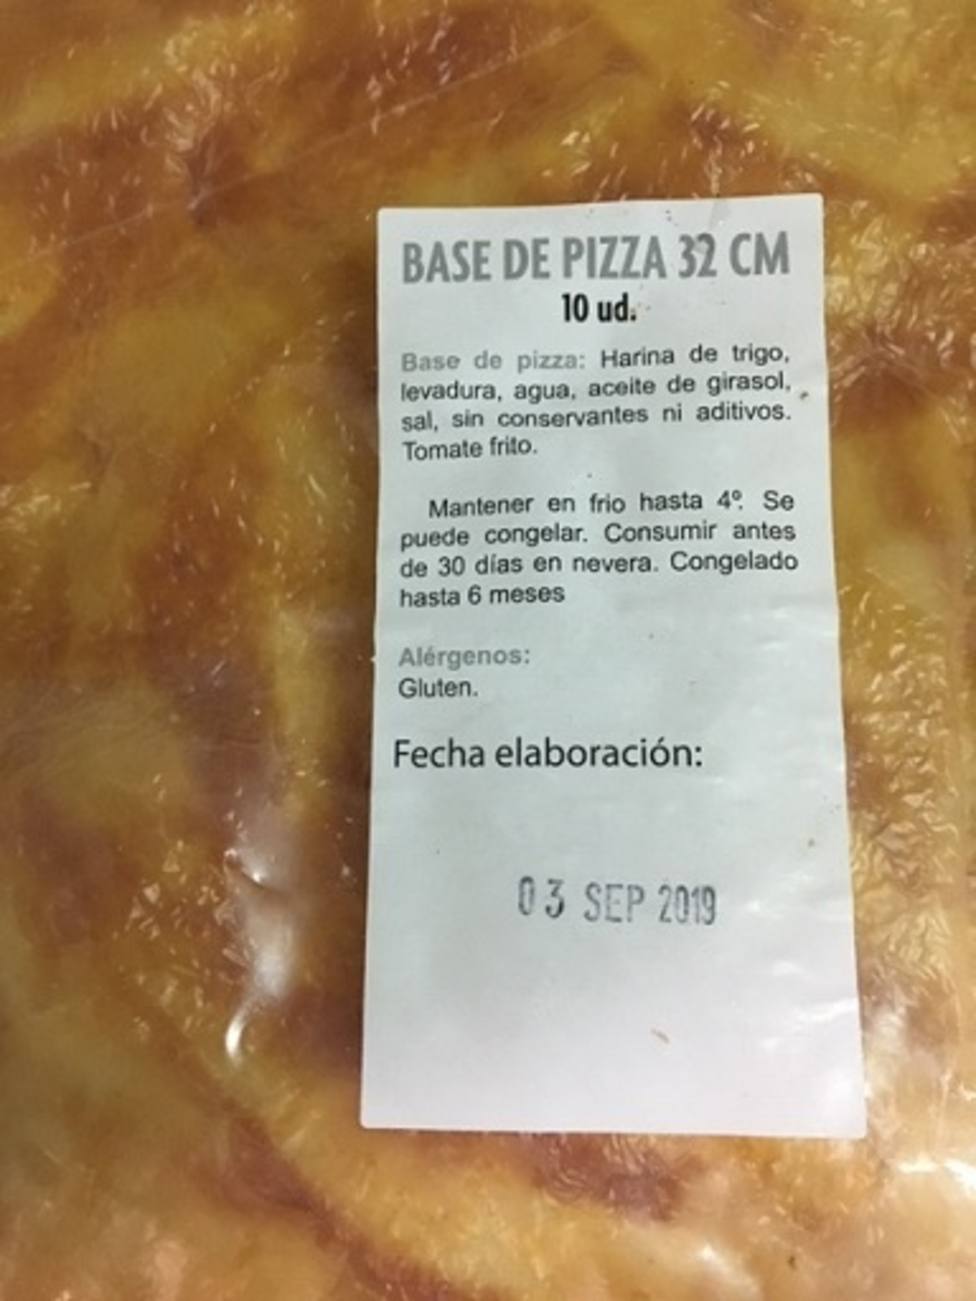 Sanidad retira del mercado las bases y pizzas de la empresa pizzaragon por no garantizar la seguridad alimentaria